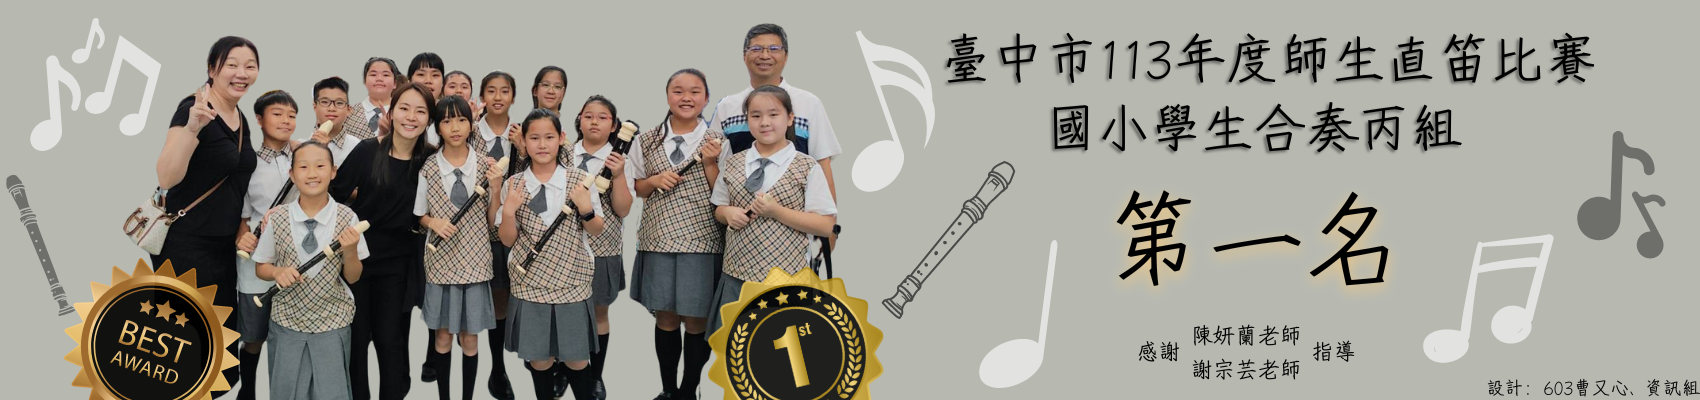 臺中市113年度師生直笛比賽國小學生合奏丙組第一名